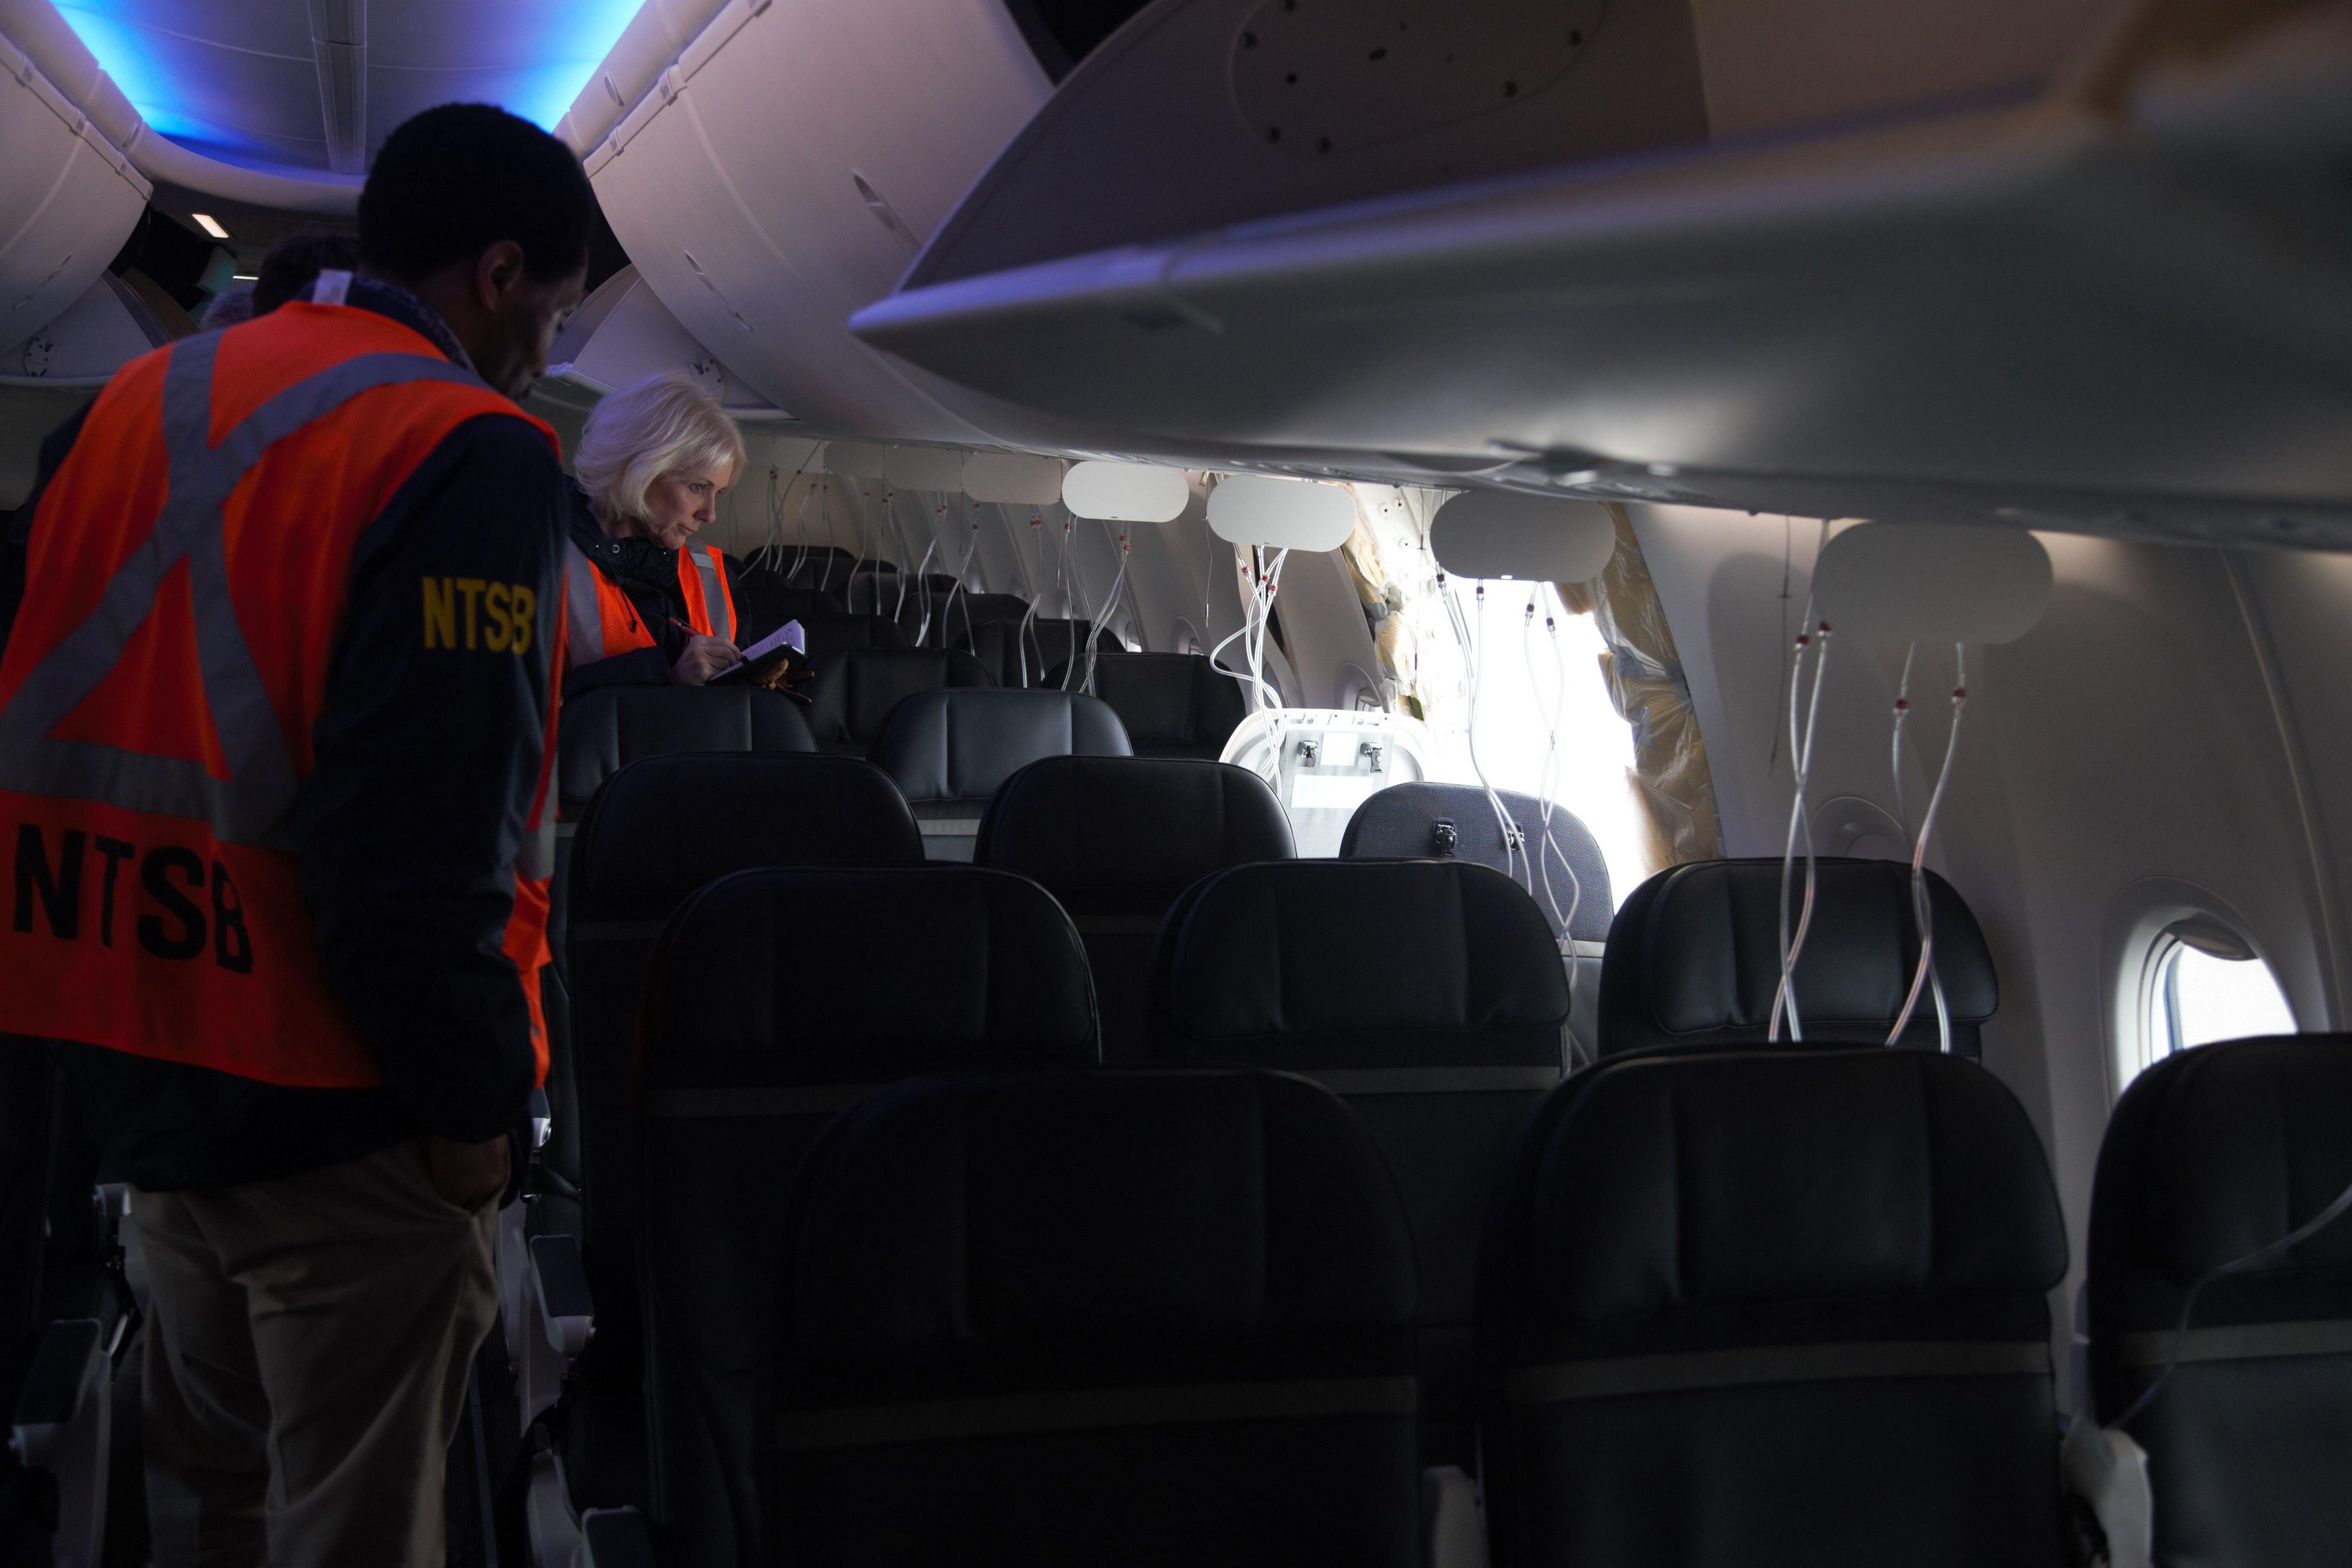 Berichten zufolge saß niemand auf dem Fensterplatz, als das Stück aus dem Flugzeug flog